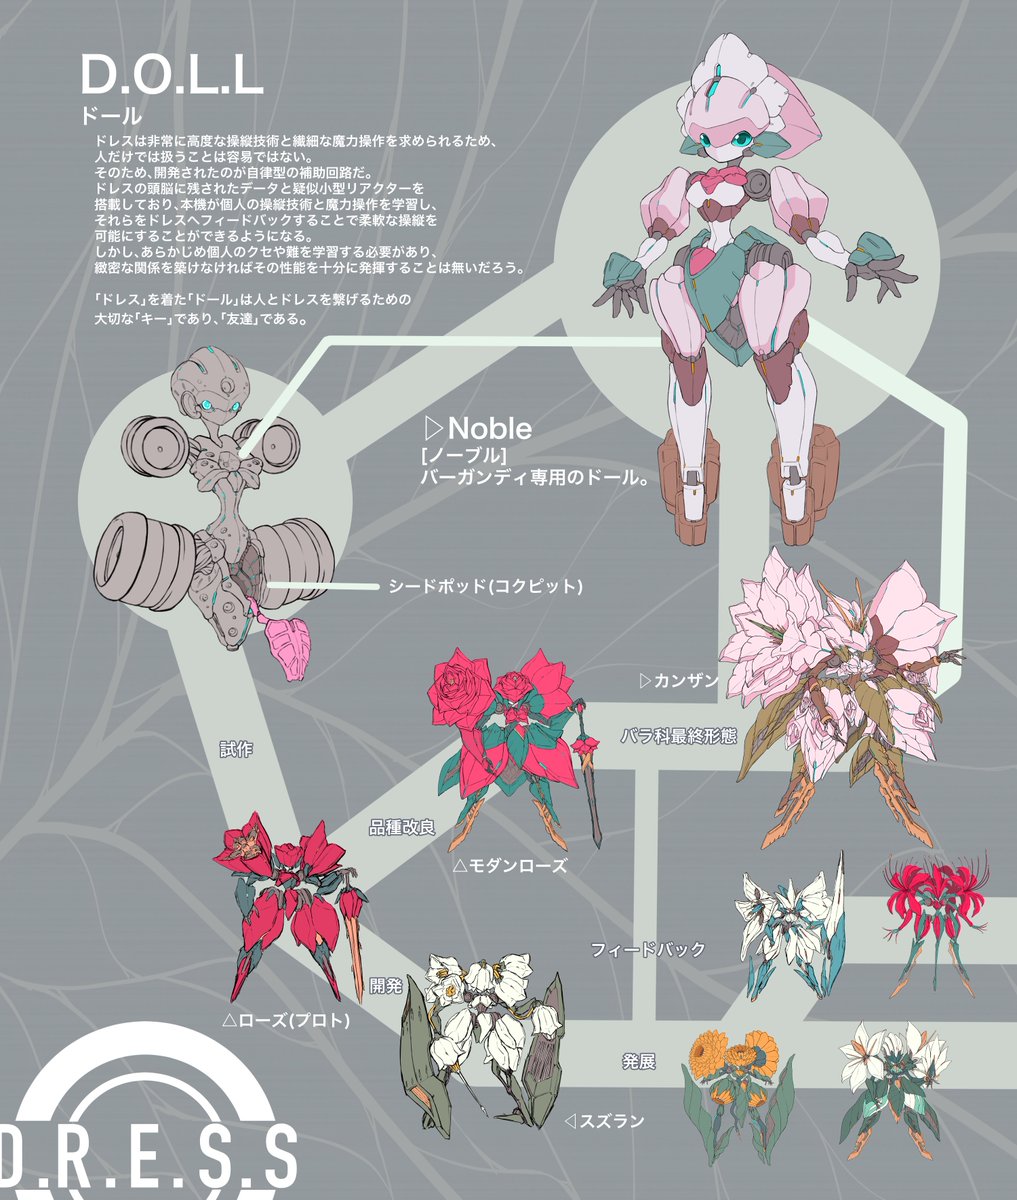 「八重桜 カンザンのお花ロボットを考えた
1月ぶりのお花ロボットです!
実は4月よ」|ぎゅーどん｡/デザイン追求中のイラスト